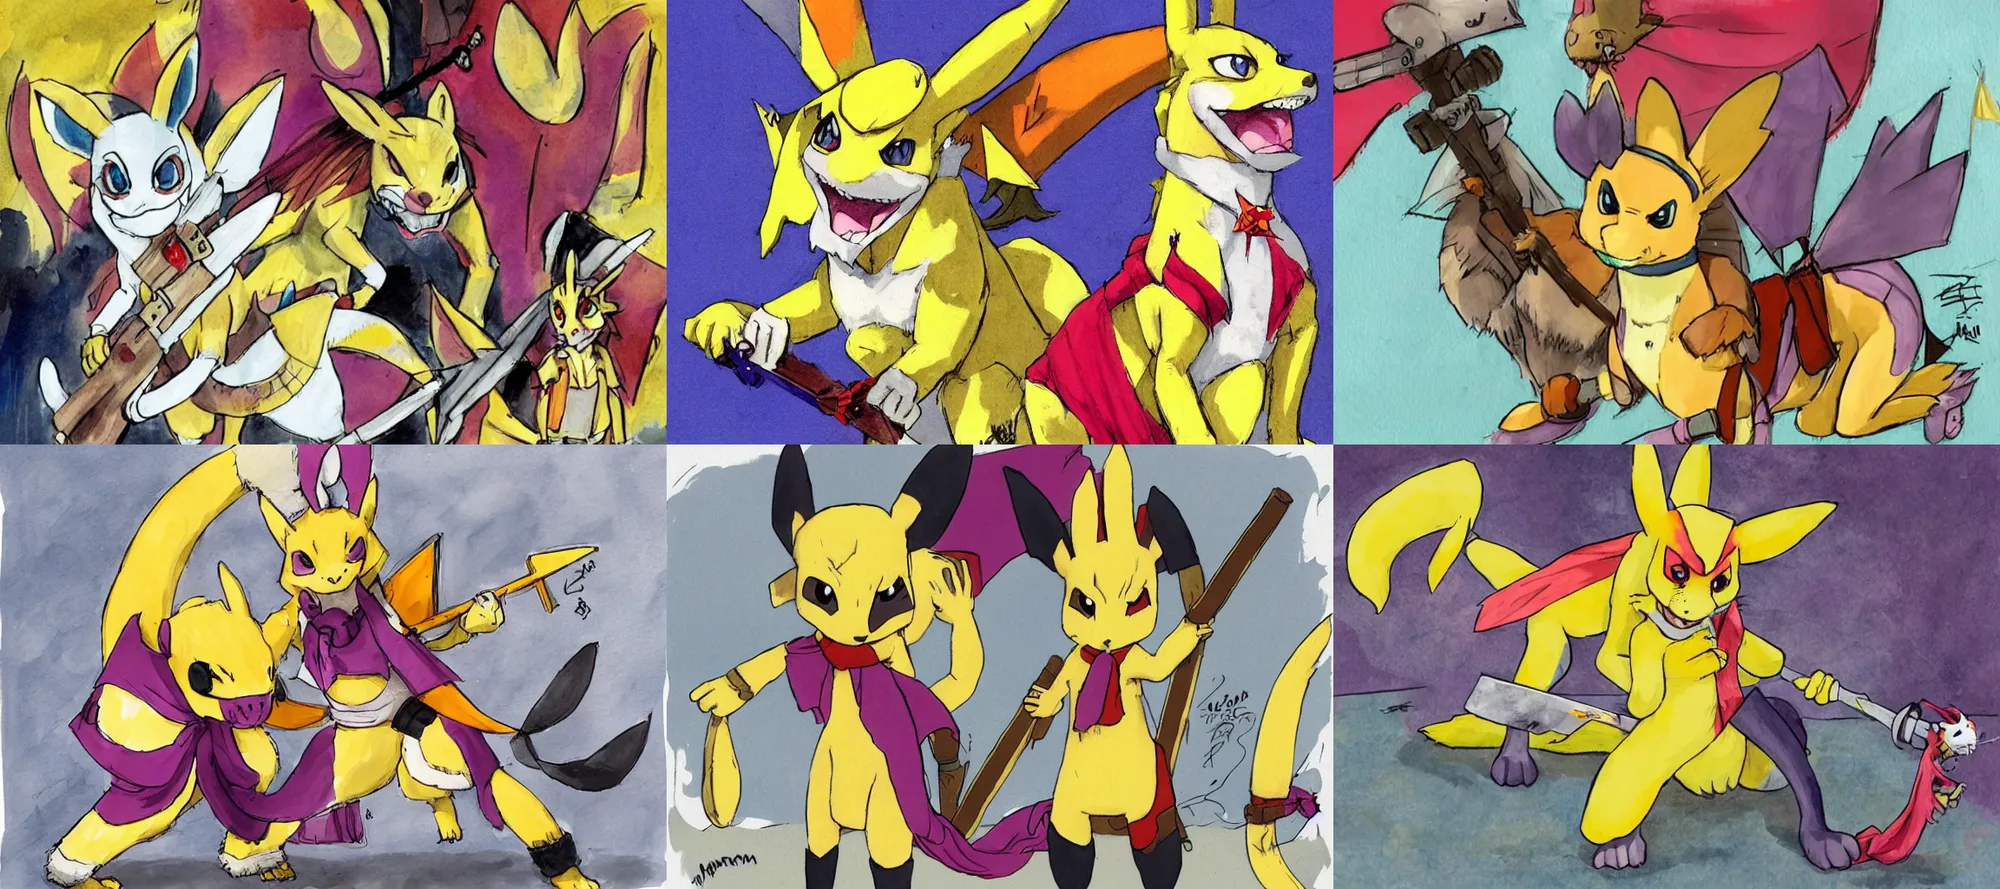 Kieffer Stone on X: Ditto's evolution Animon from the Pokémon